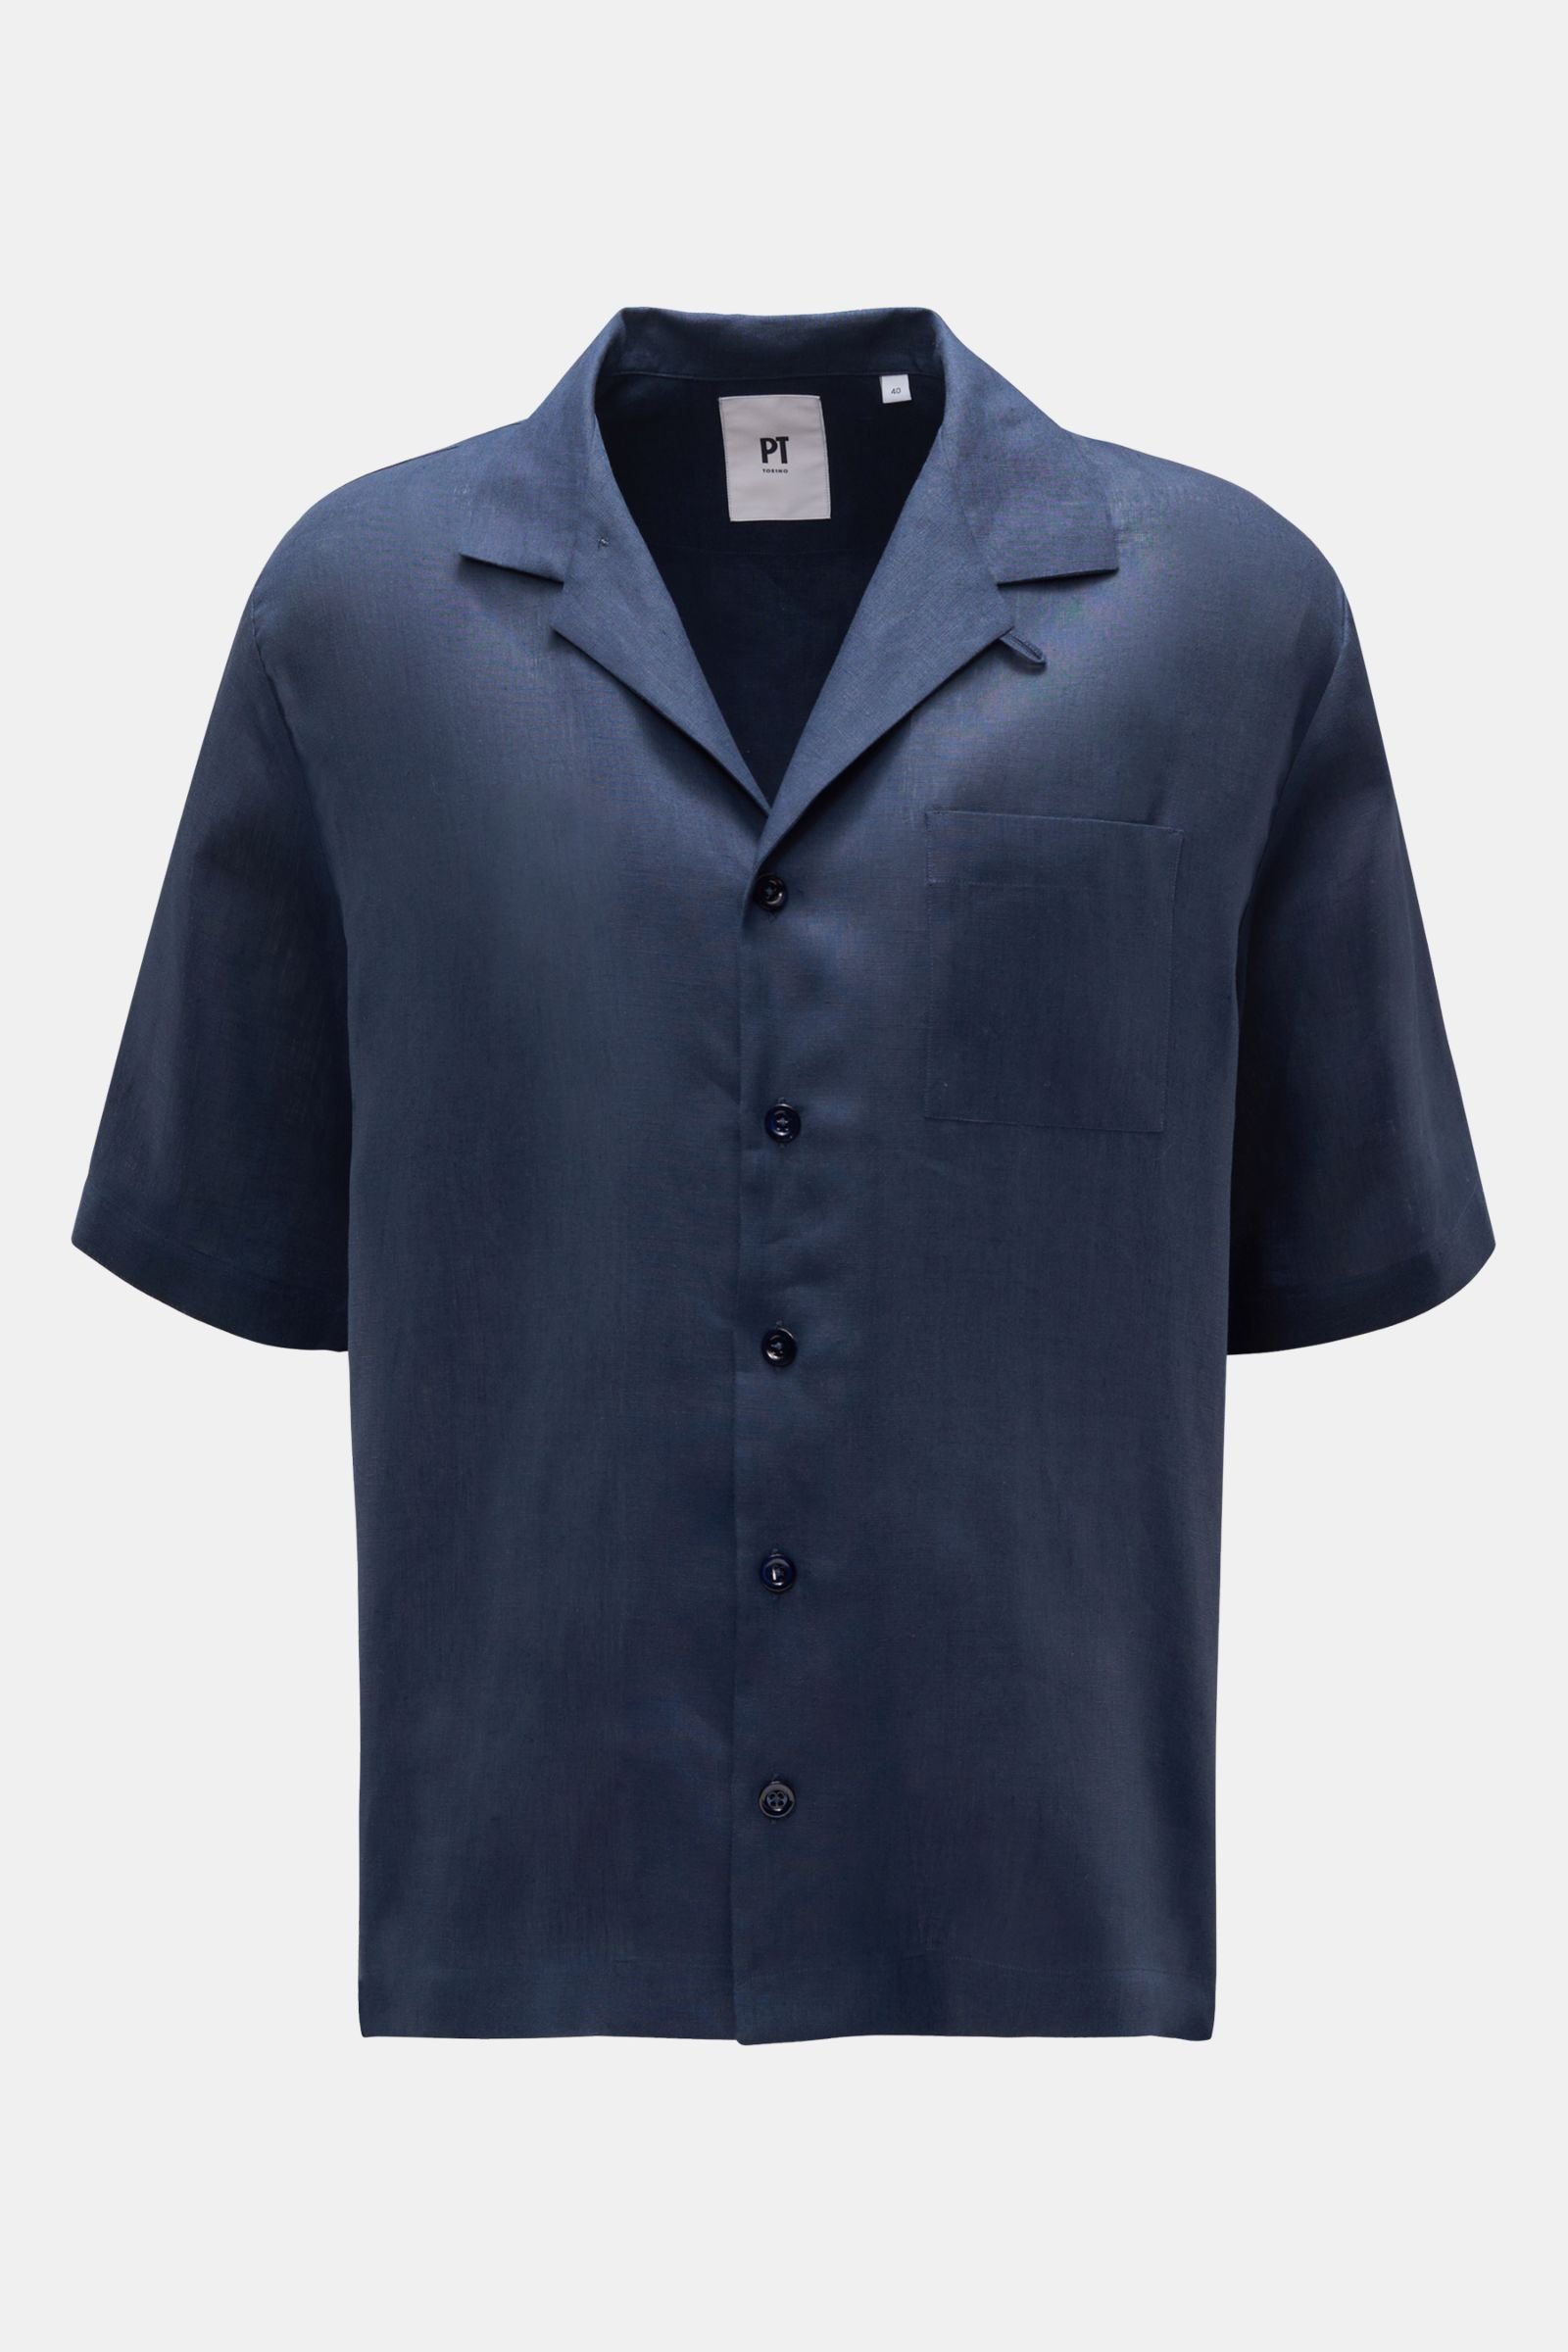 Linen short sleeve shirt Cuban collar navy